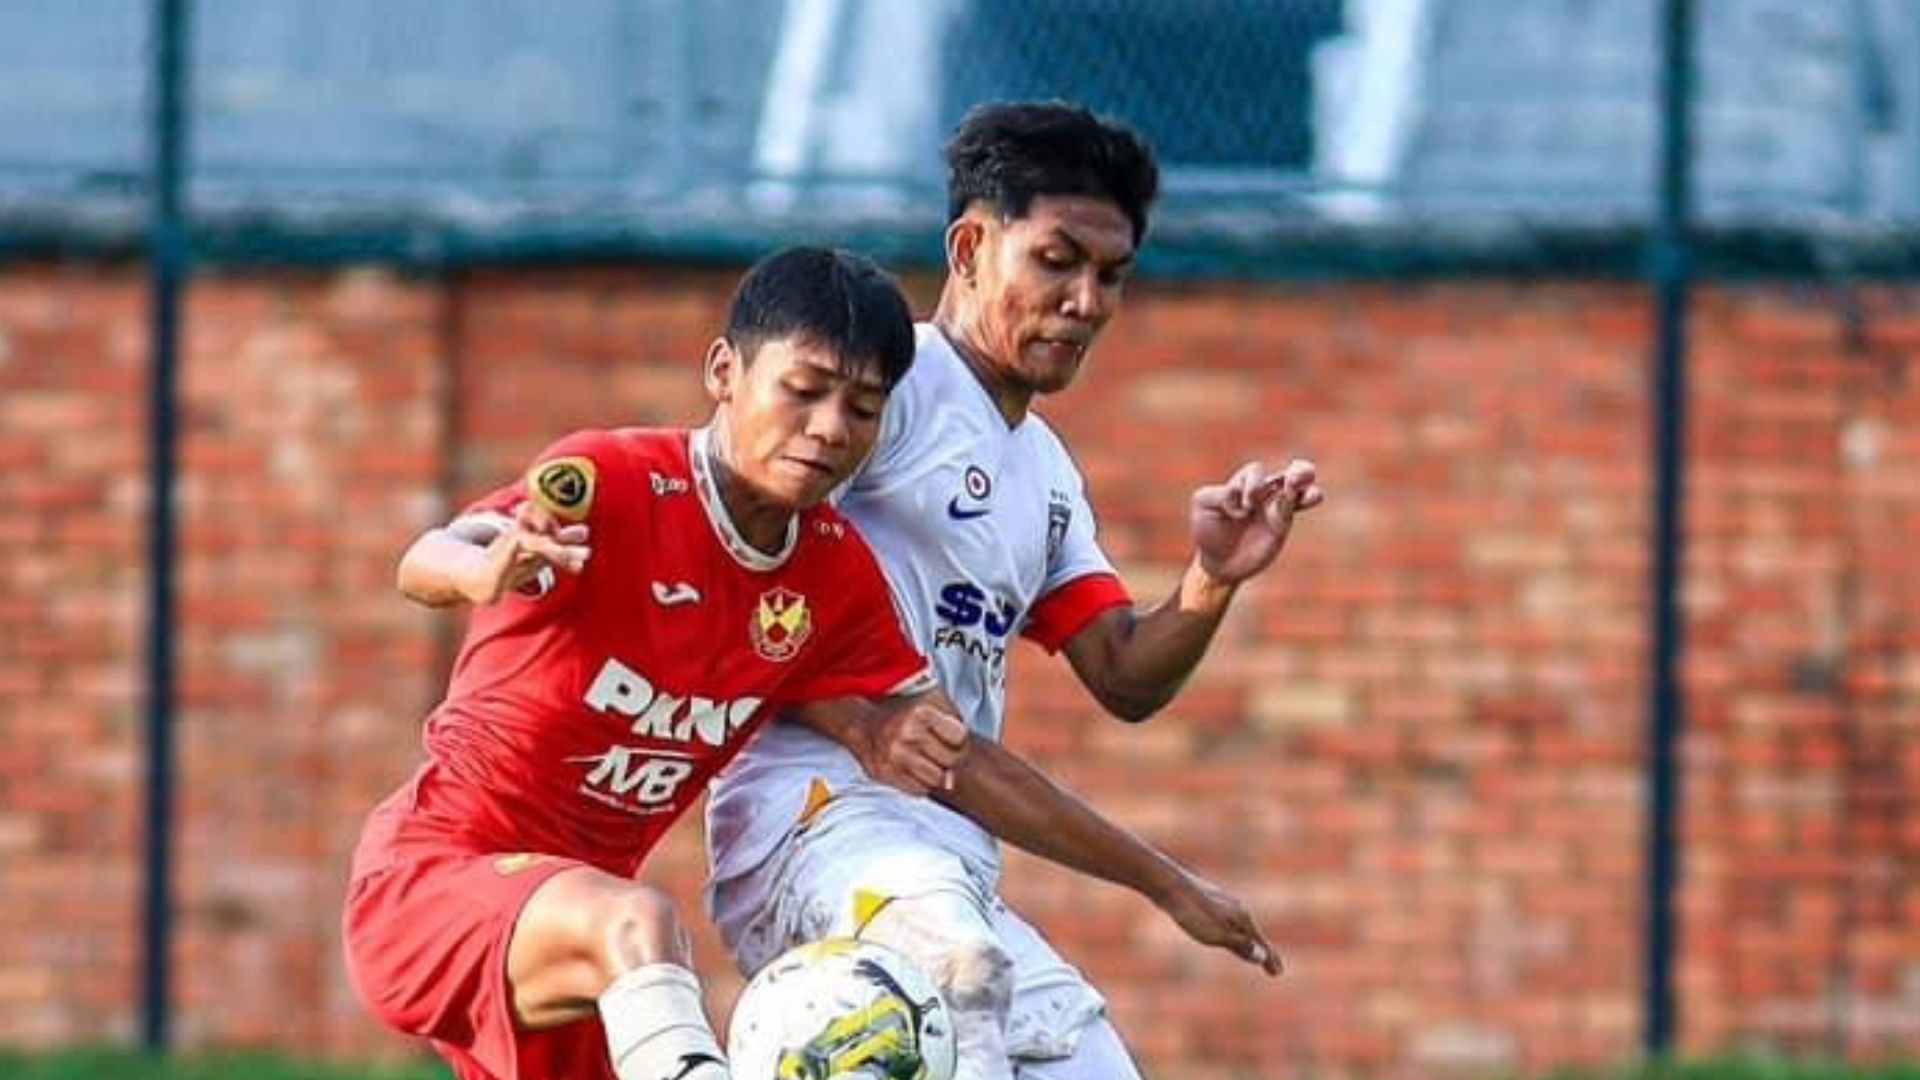 JDT Sel Piala Belia Skuad Muda JDT Diikat Selangor